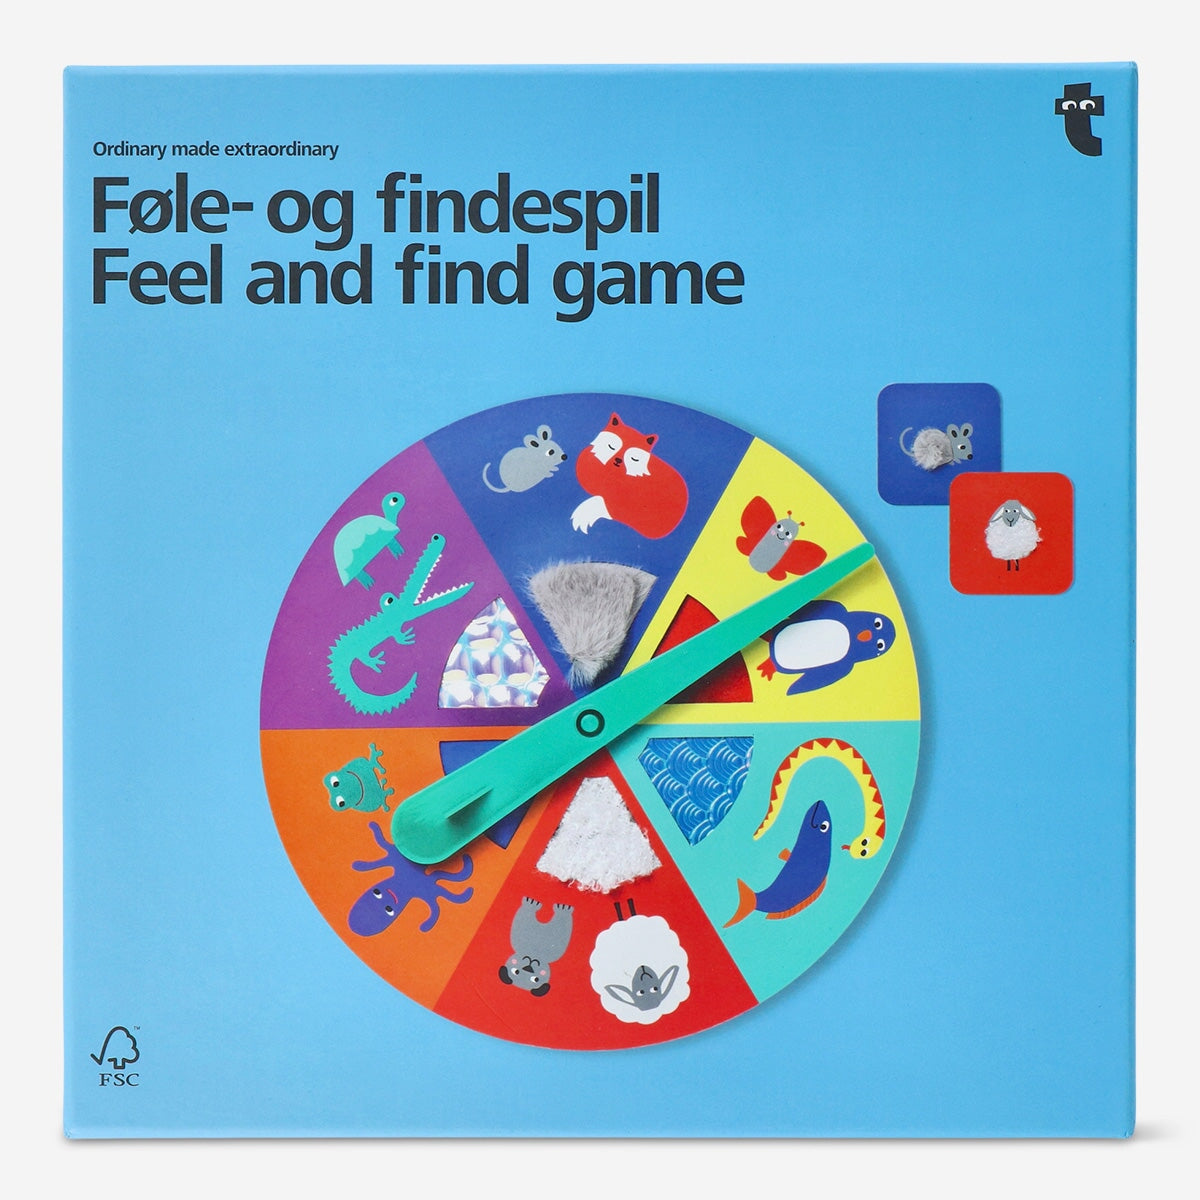 Νιώστε και βρείτε το παιχνίδι €8| Flying Tiger Copenhagen